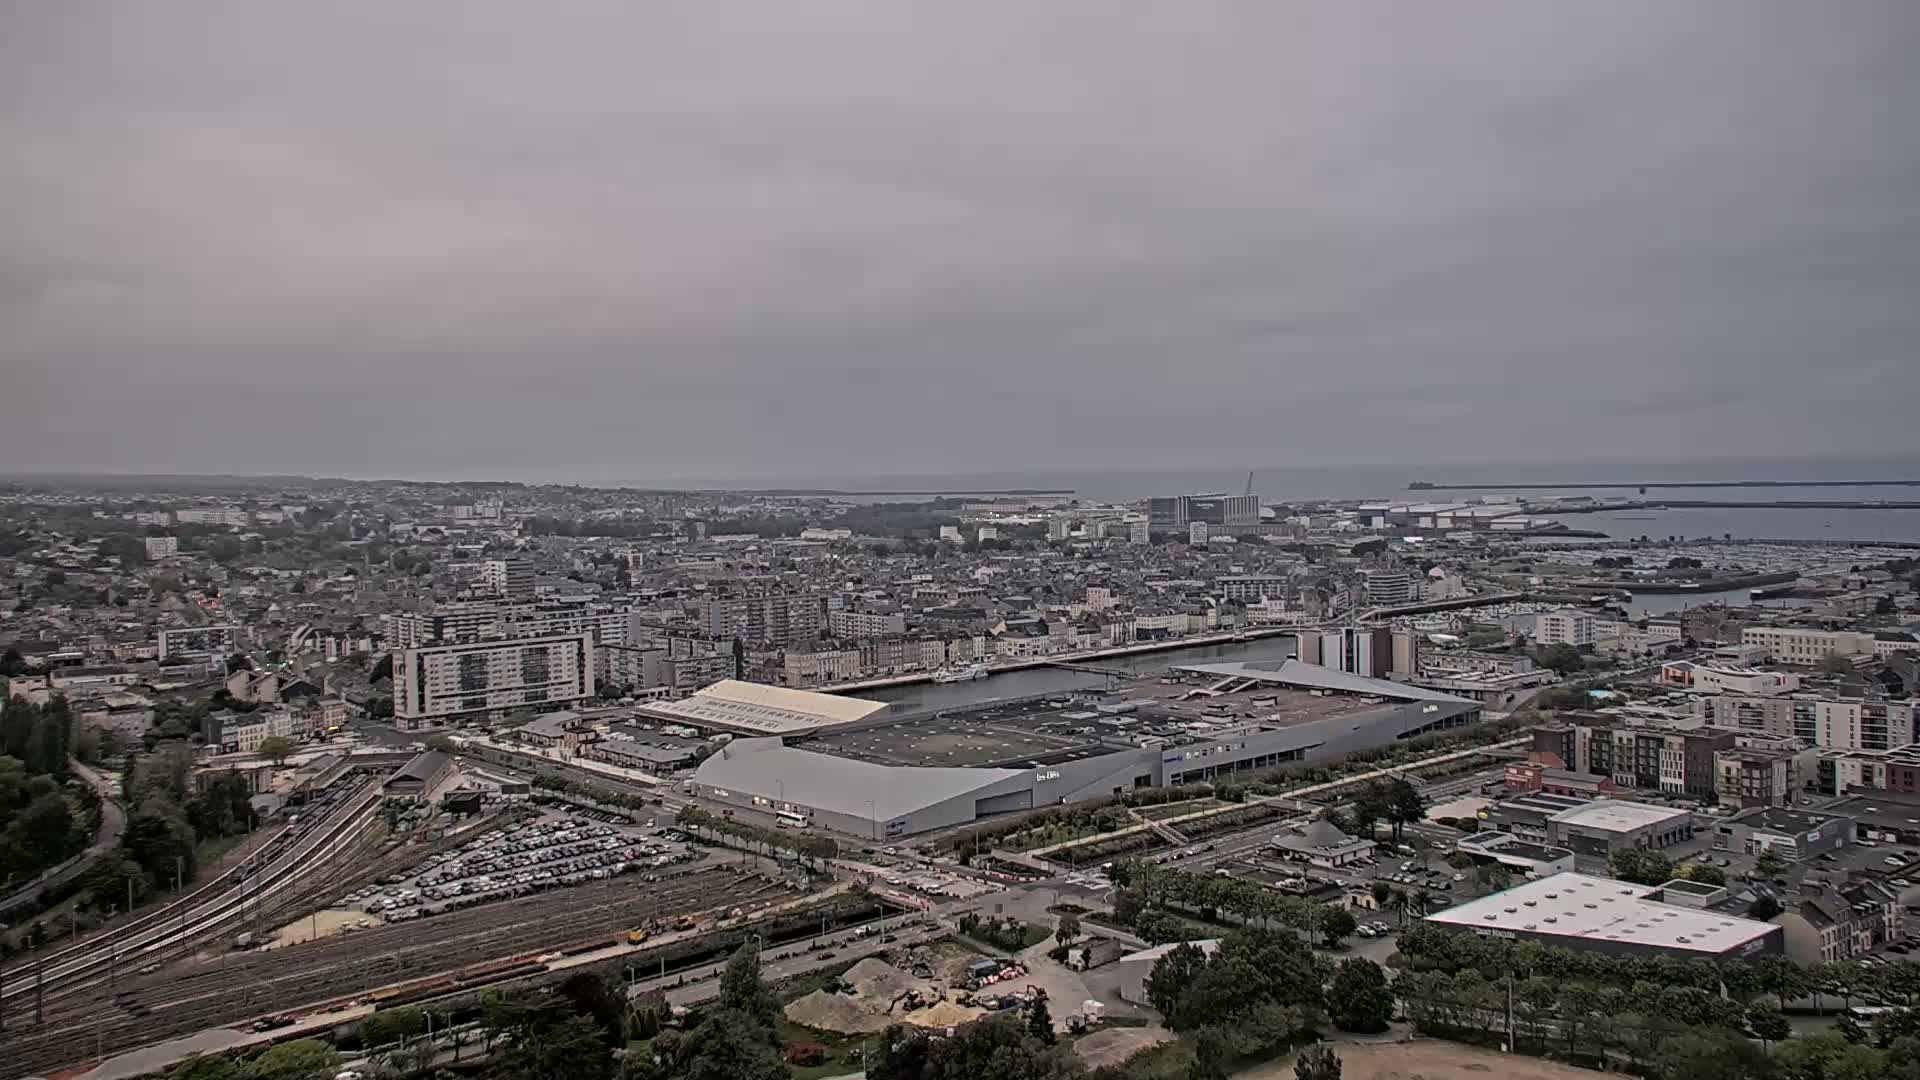 Cherbourg-Octeville Fre. 08:33